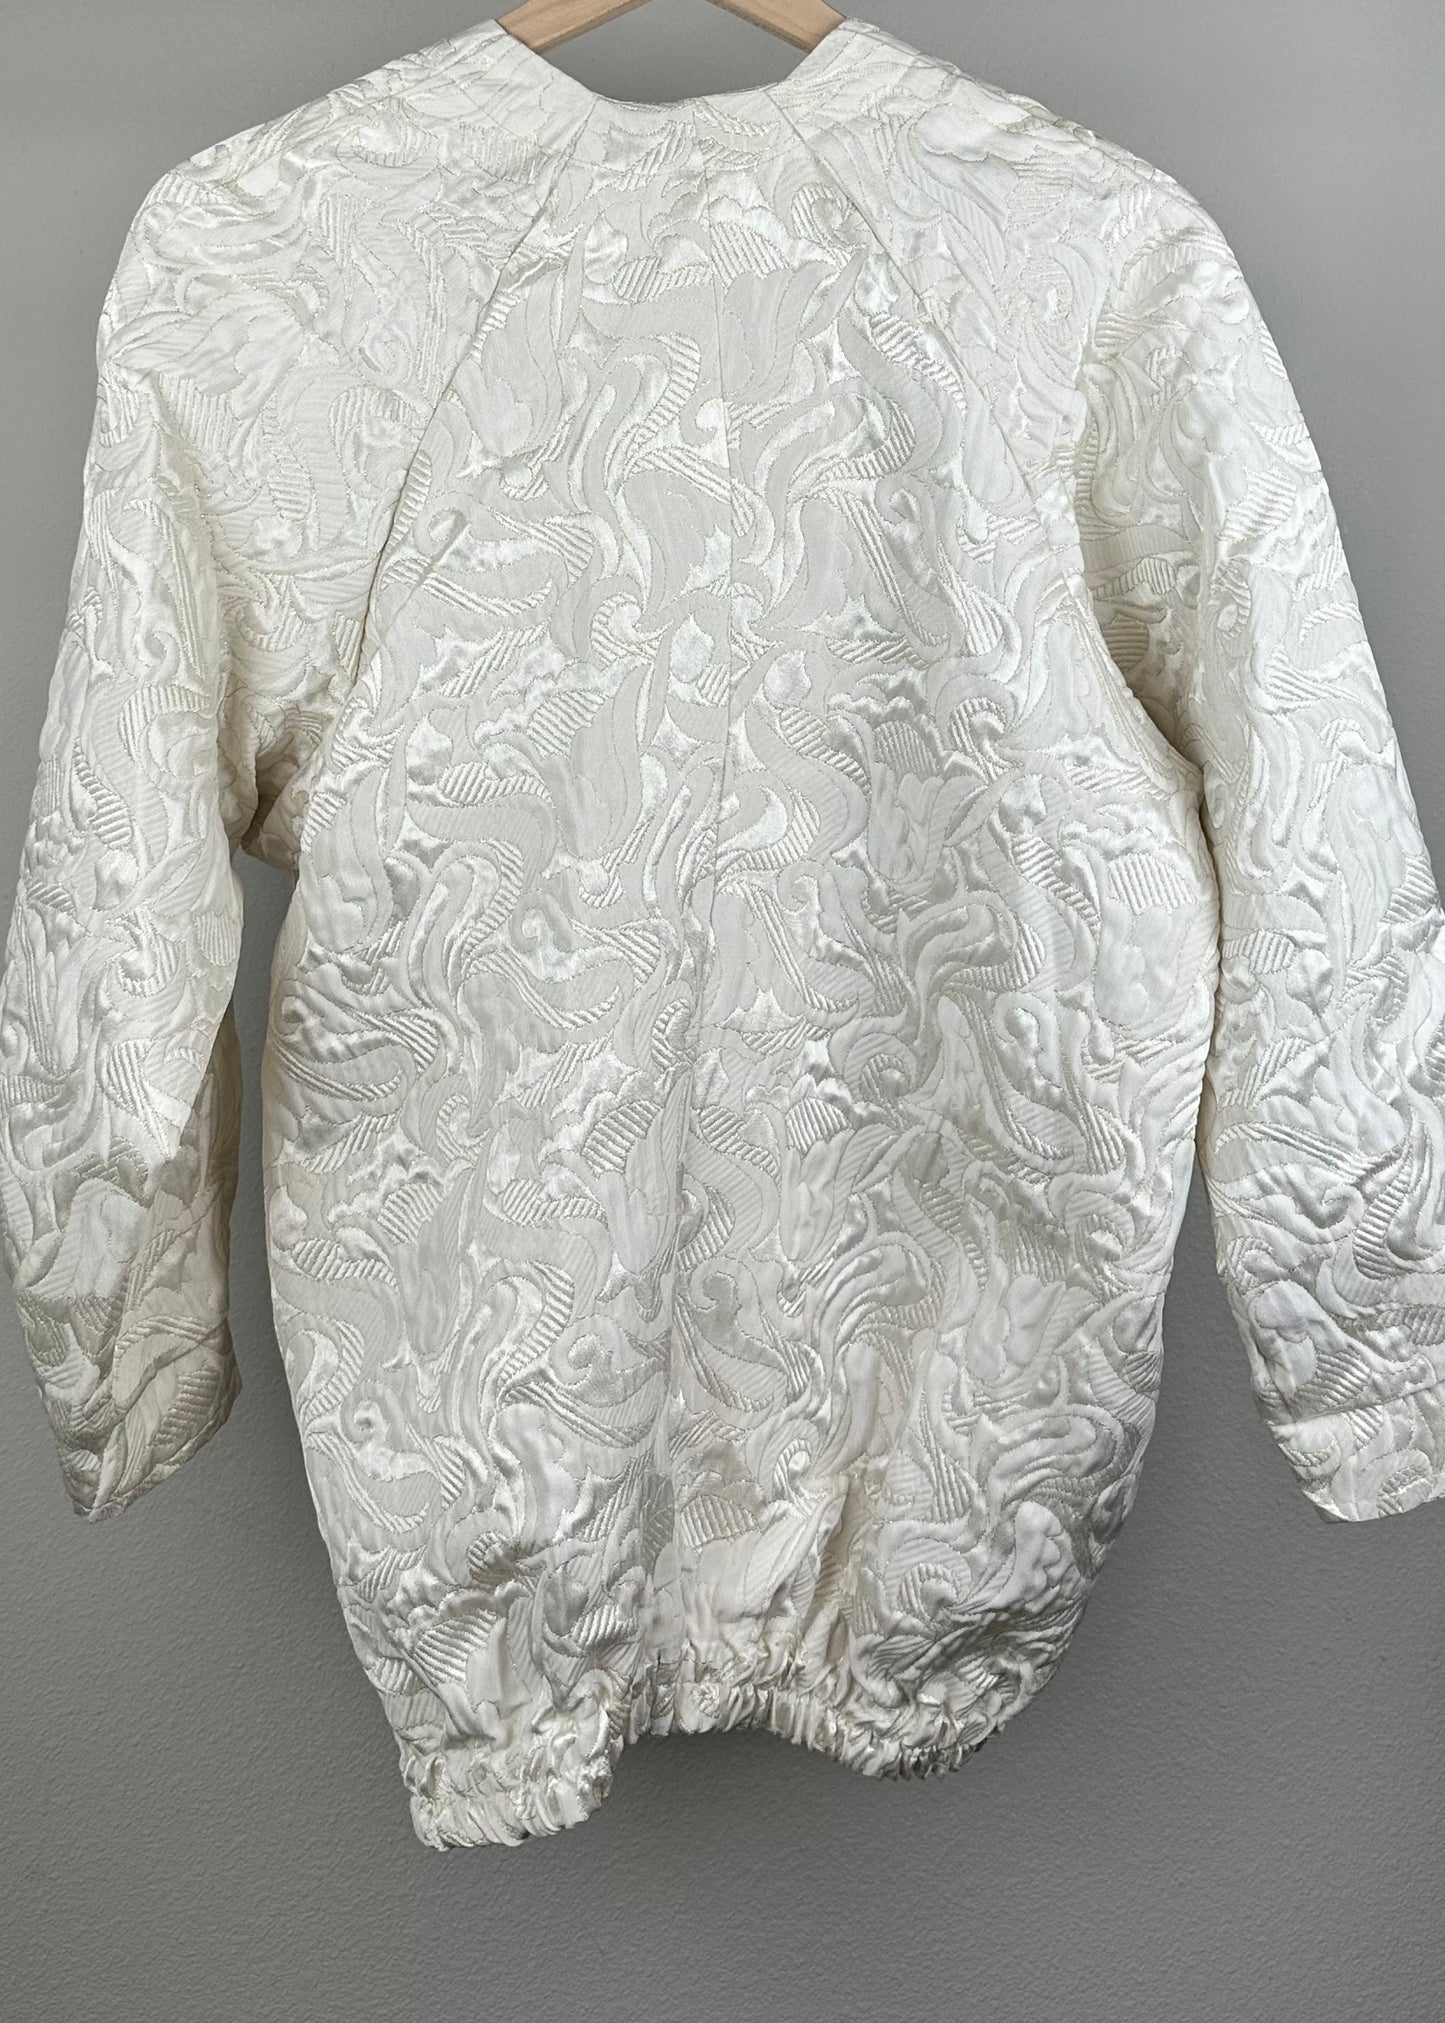 White on White Floral Jacket